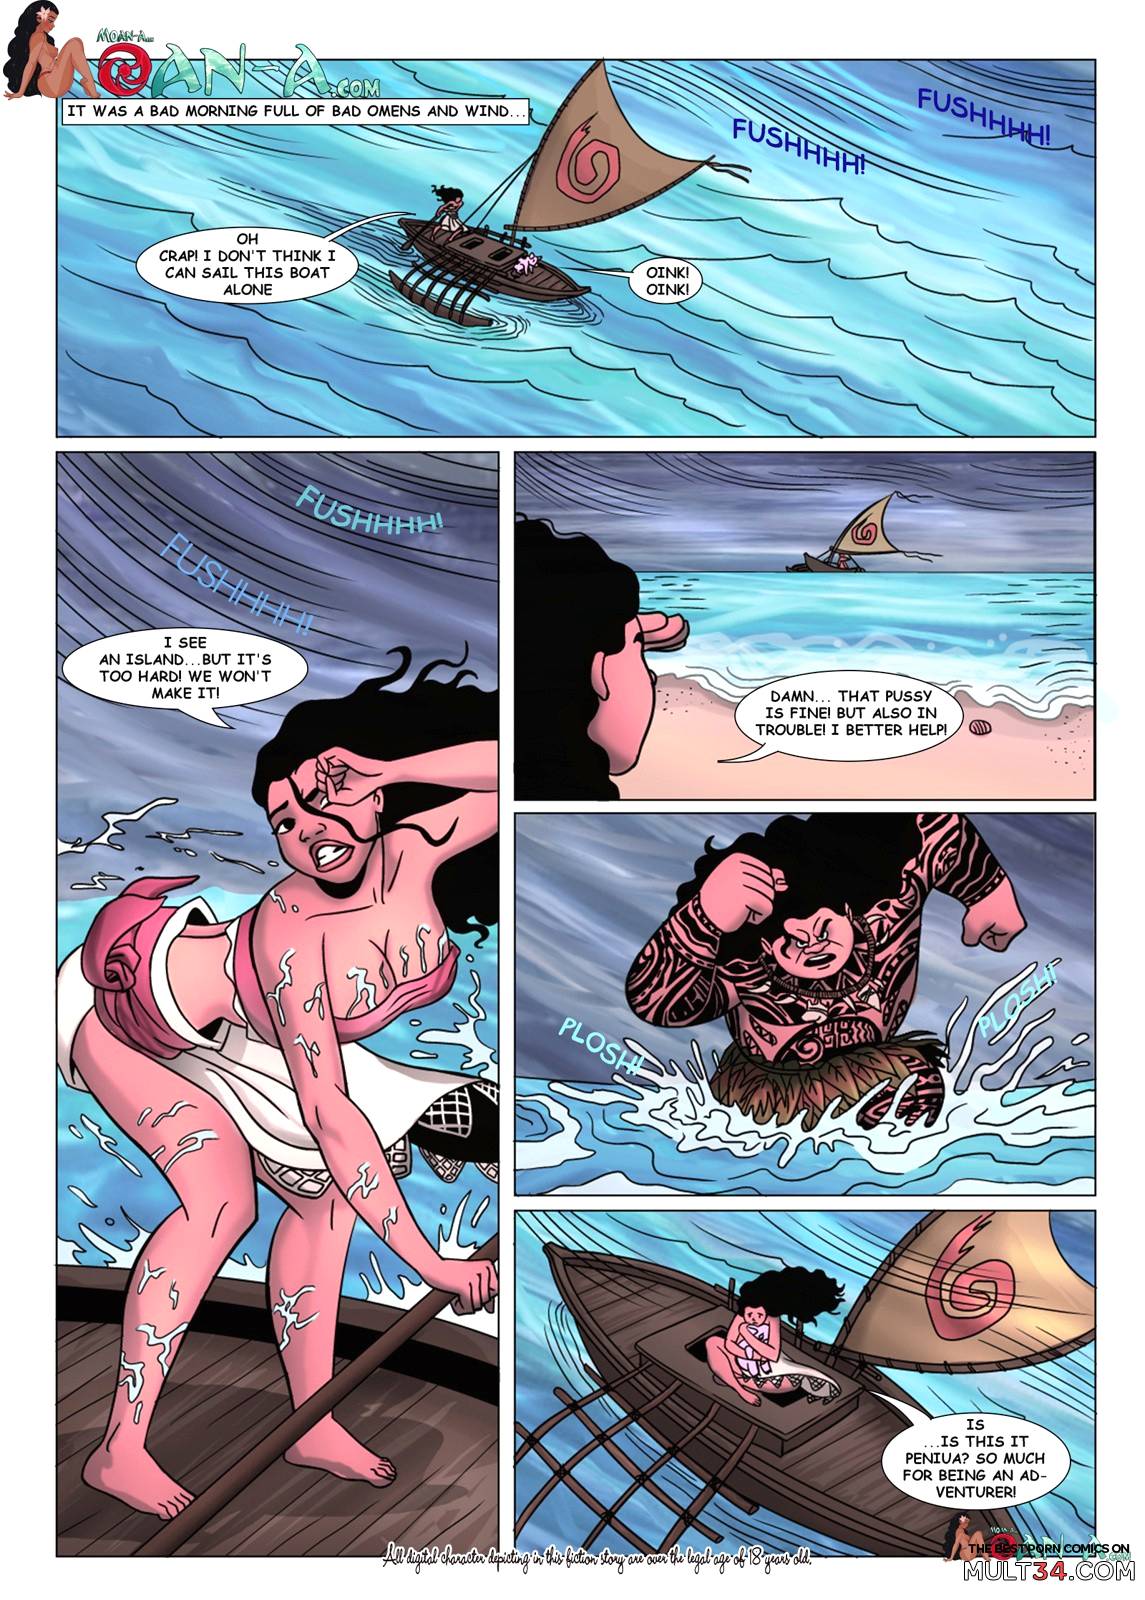 Boat Cartoon Porn - Moana porn comics, cartoon porn comics, Rule 34